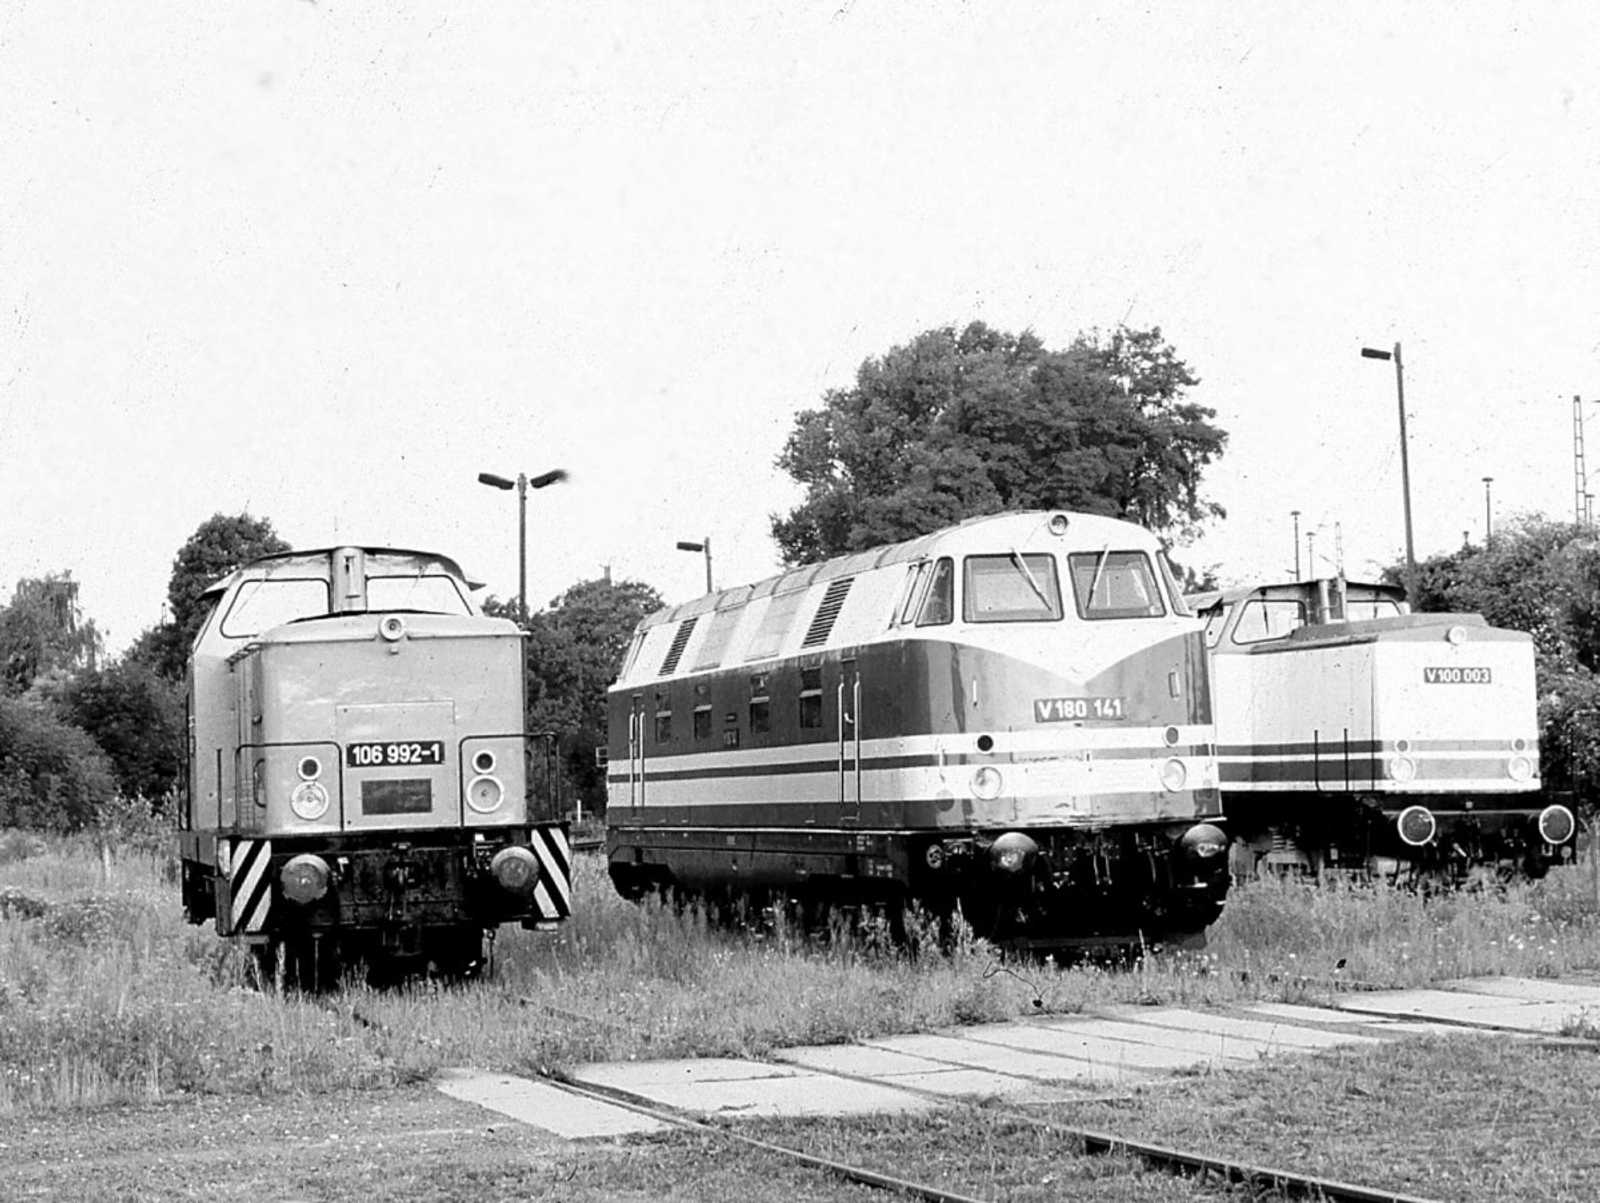 Mit V180 141 und V100 003 repräsentierte 106 992 beim Bw-Fest in Engelsdorf die Diesellokomotiven der Reichsbahnzeit.